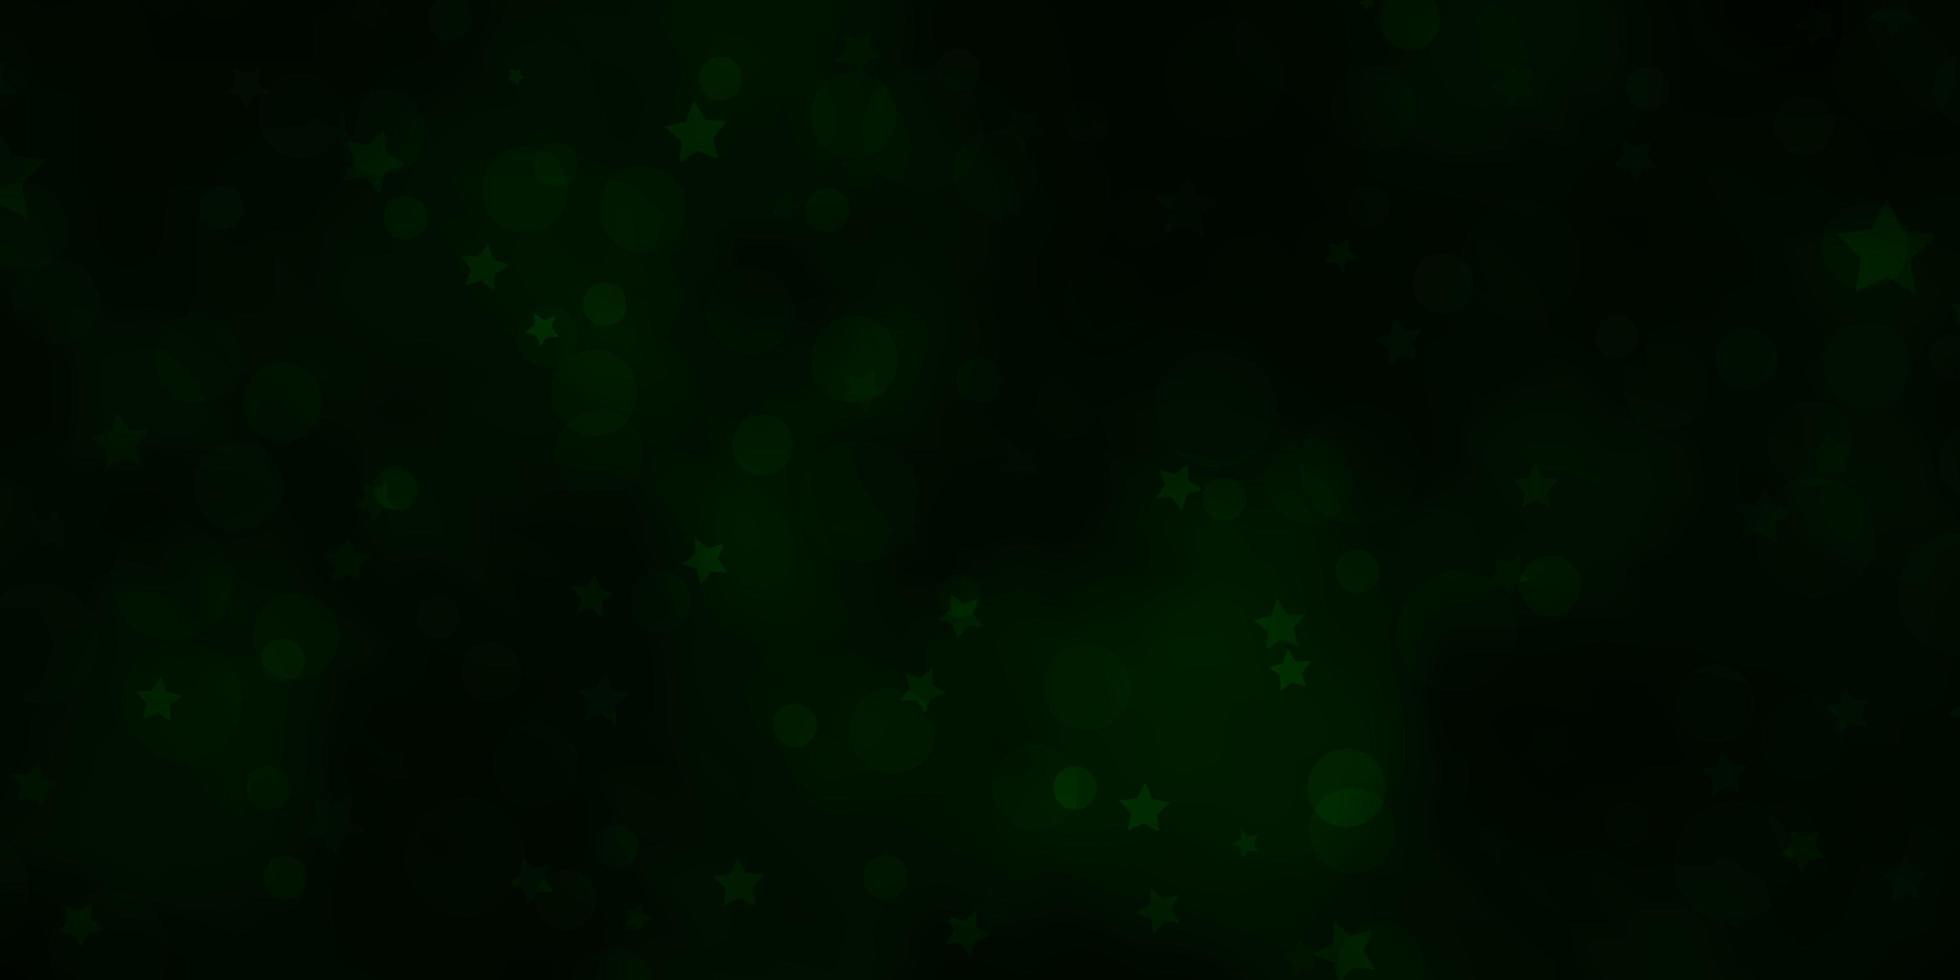 Fondo de vector verde oscuro con círculos, estrellas.